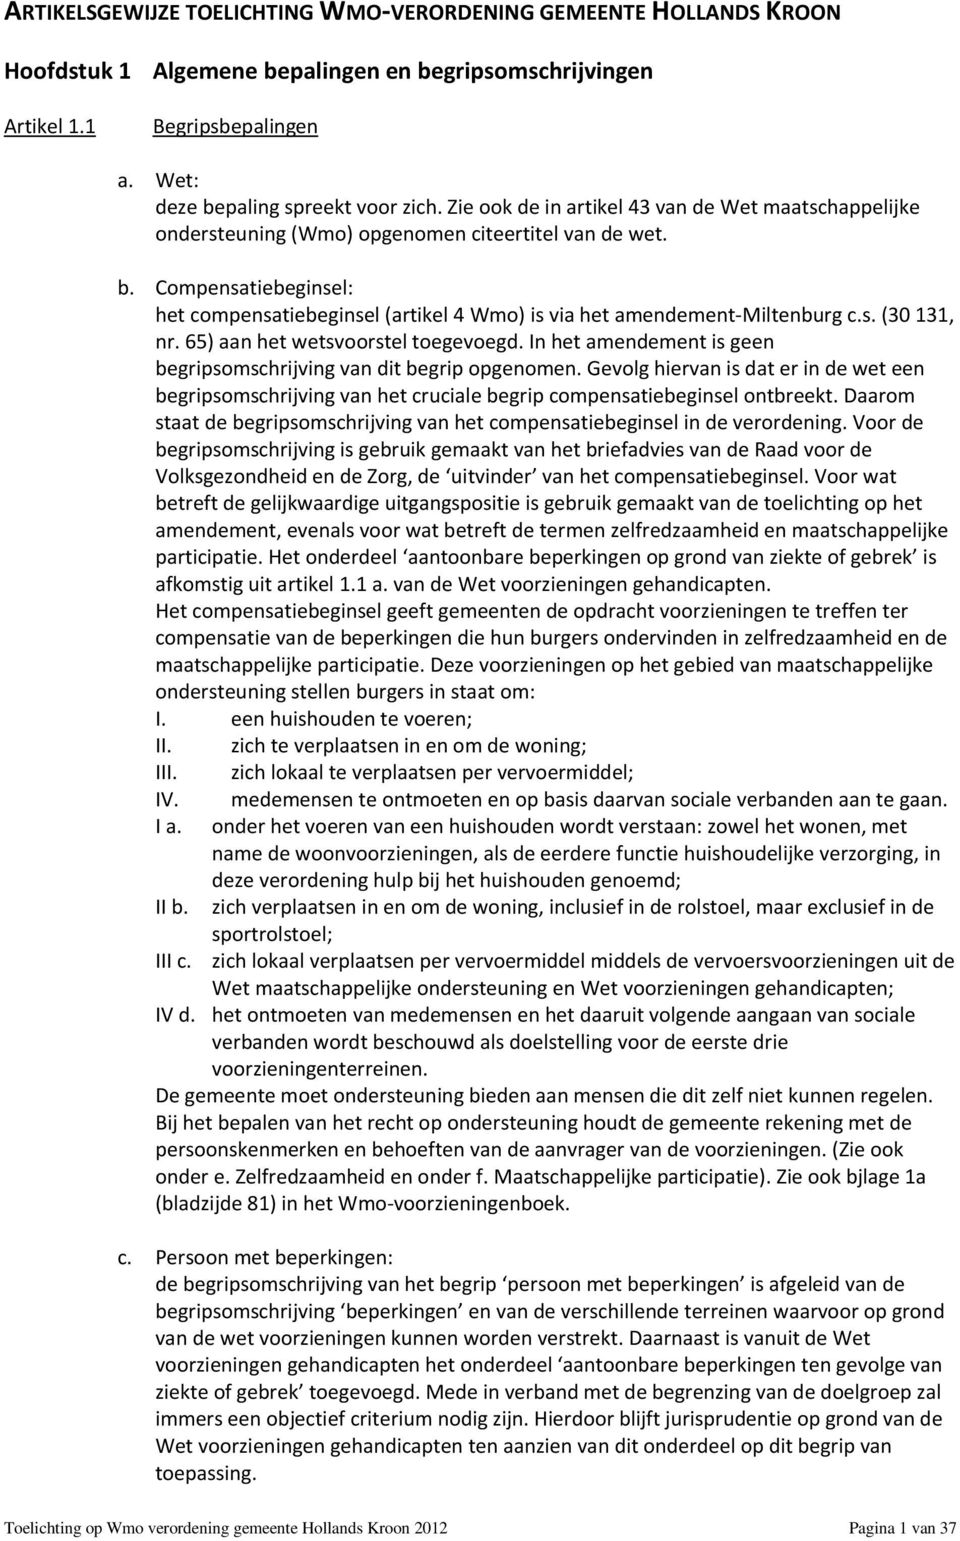 Compensatiebeginsel: het compensatiebeginsel (artikel 4 Wmo) is via het amendement-miltenburg c.s. (30 131, nr. 65) aan het wetsvoorstel toegevoegd.